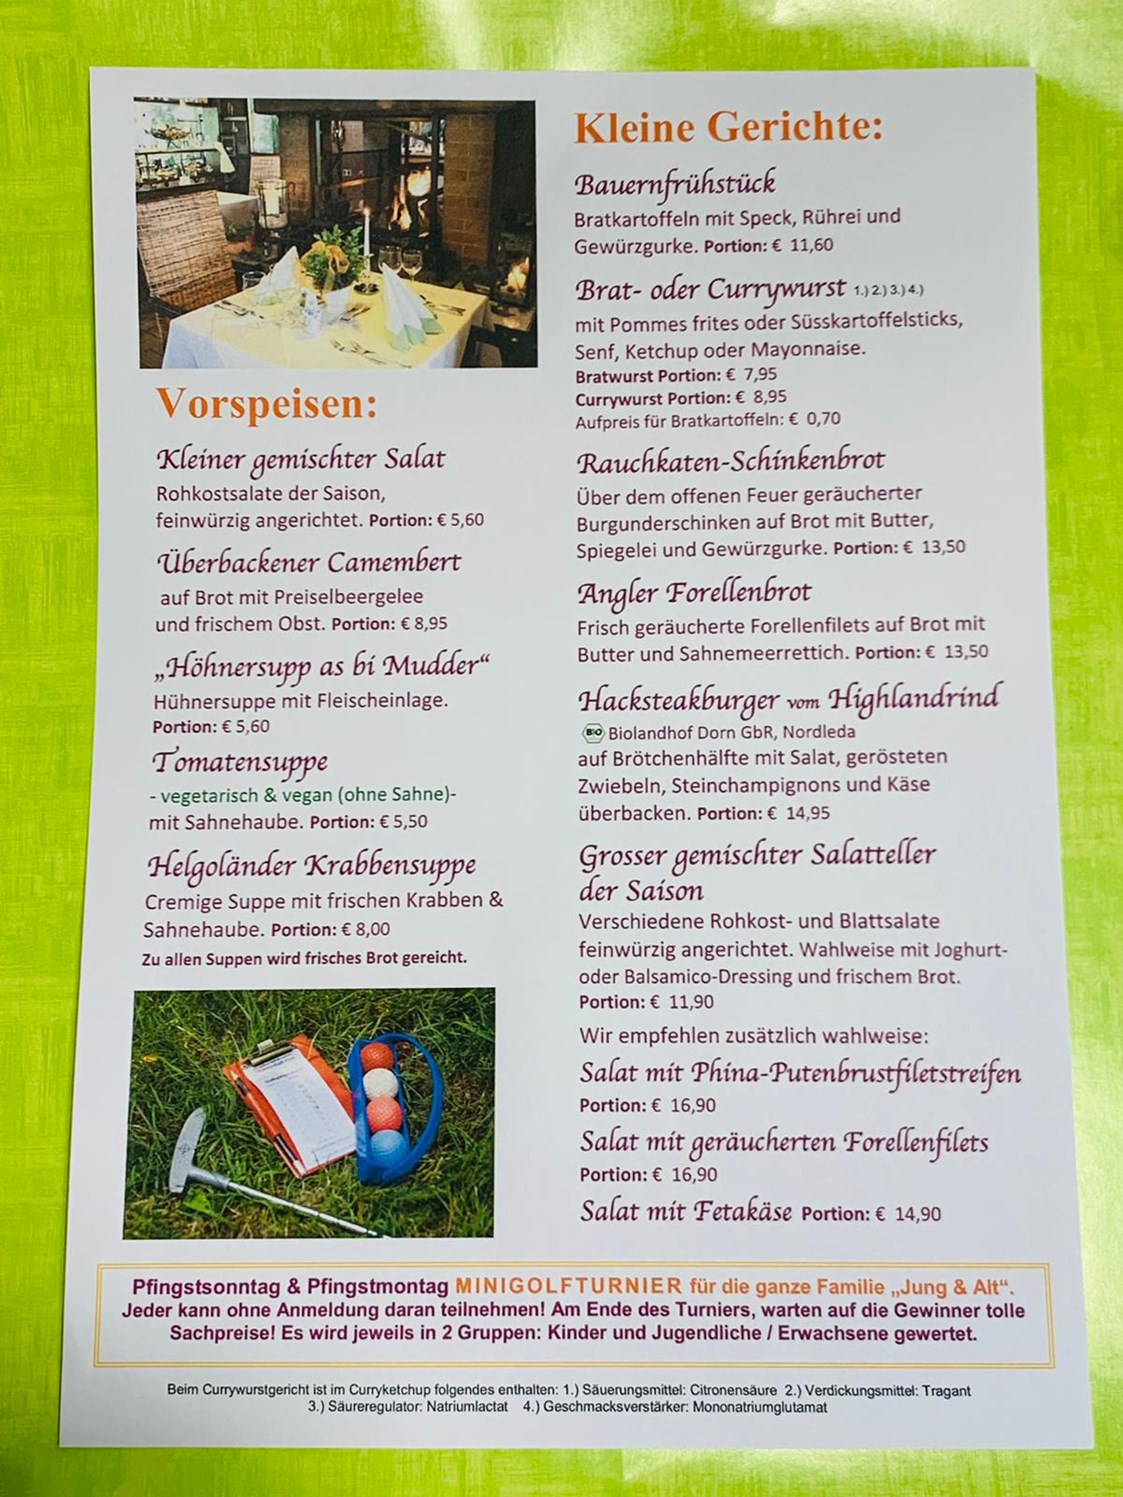 Restaurant: Speisenkarte Seite 1 ab April 2022 - Rauchkate Beverstedt